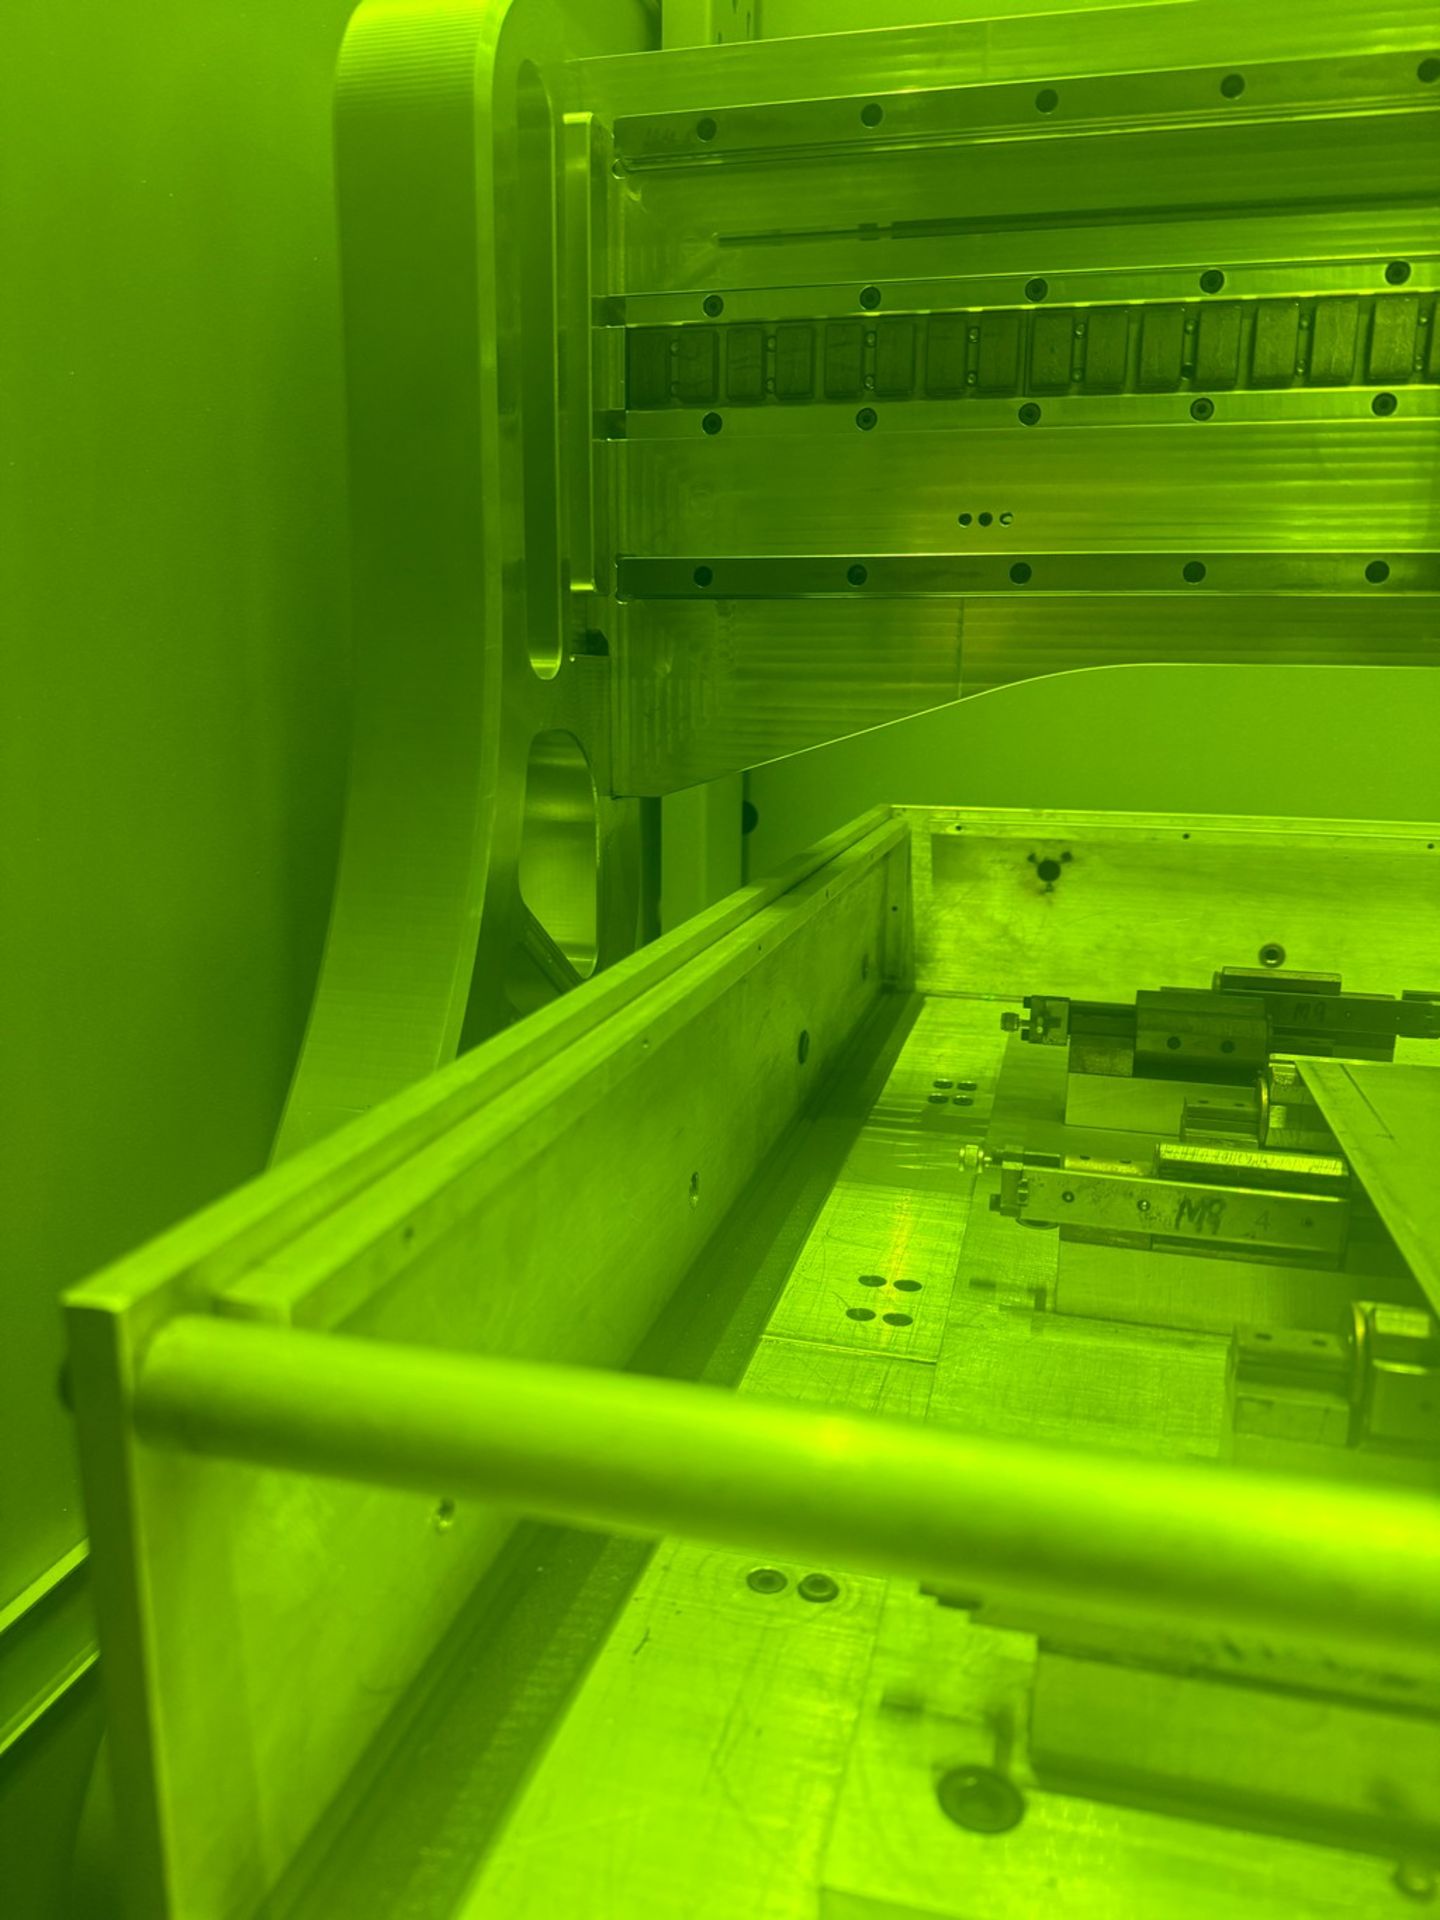 OR-Laser Orlas Portal 1000 CNC Laser Engraving Machine - Image 6 of 9